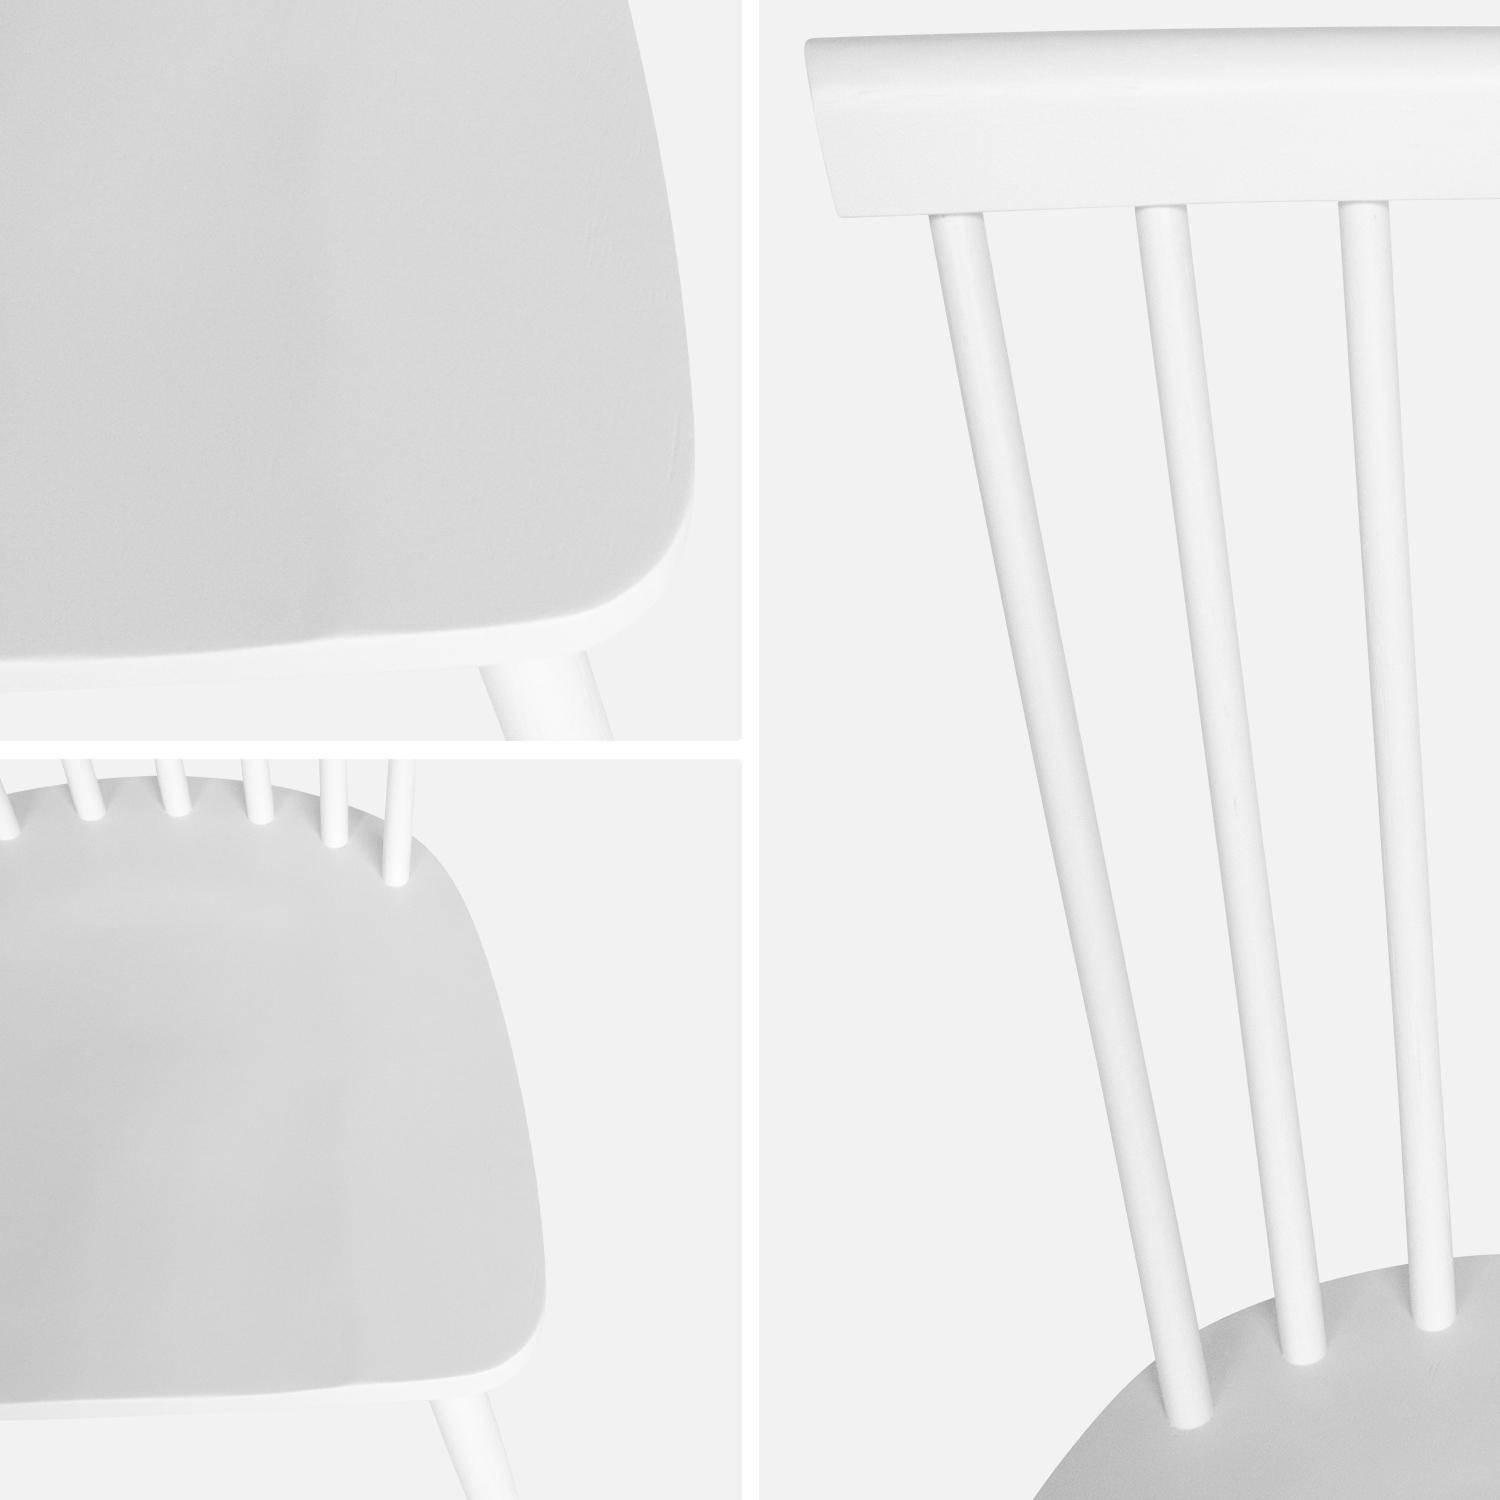 Lot de 2 chaises blanches à barreaux en bois d'hévéa, ROMIE, L 50,8 x P 44,2 x H 90cm. Livraison offerte, garantie 2 ans, meilleur prix garanti ! ,sweeek,Photo6